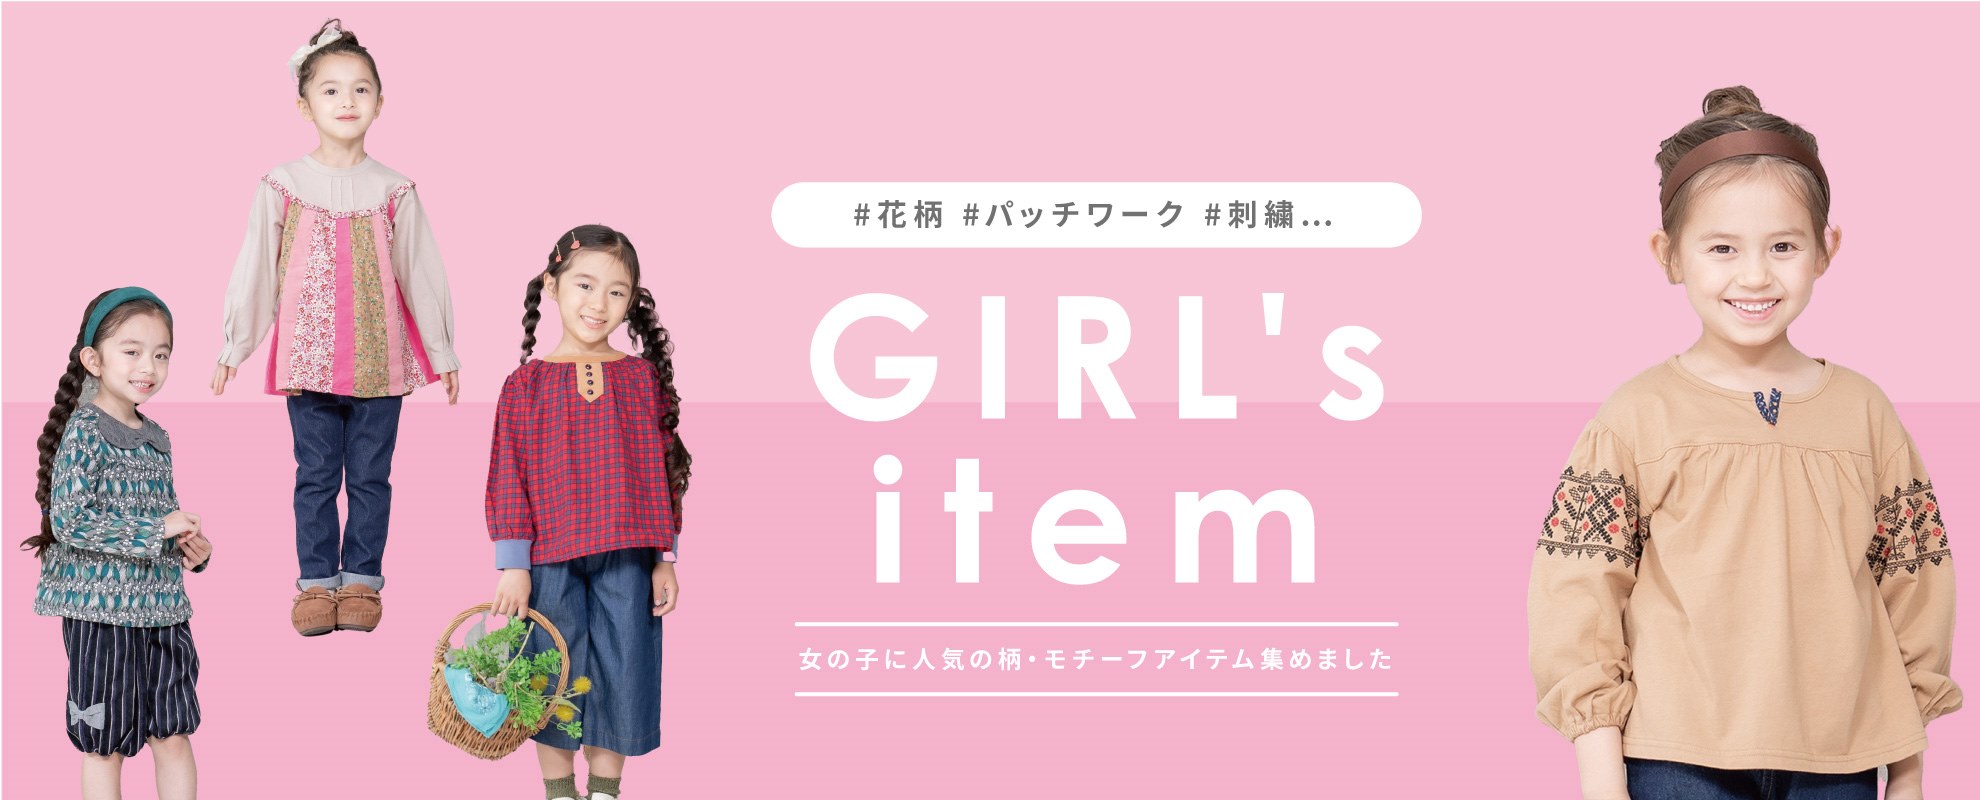 GIRL's item | ラグマートオンラインショップ【公式】 - 子供服